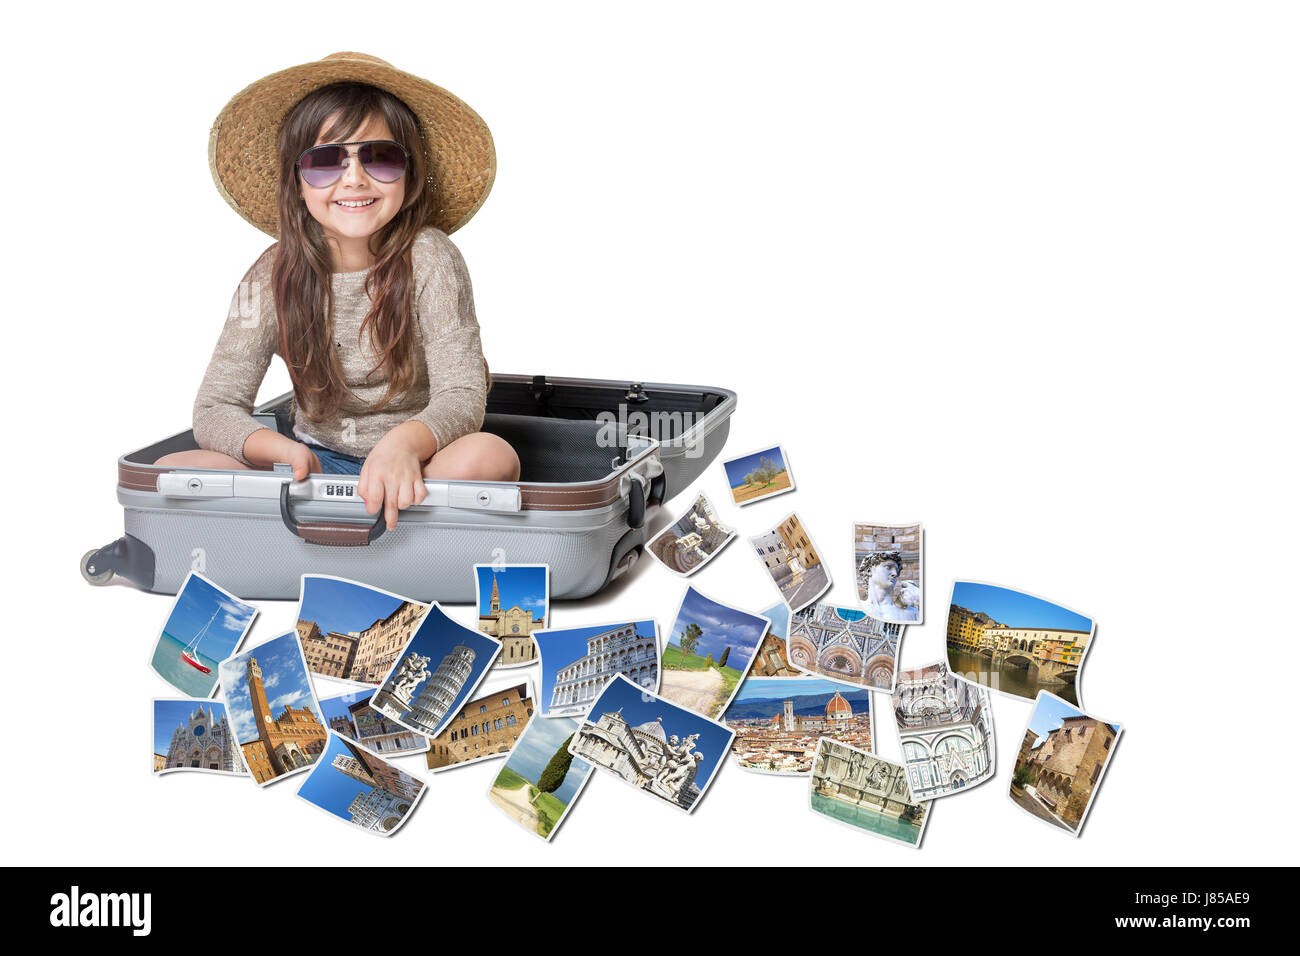 Petite fille aux cheveux longs avec chapeau de paille est assis dans une valise ouverte. Photos des sites touristiques de la Toscane (Italie) vole autour de la valise. Tout est sur le Banque D'Images